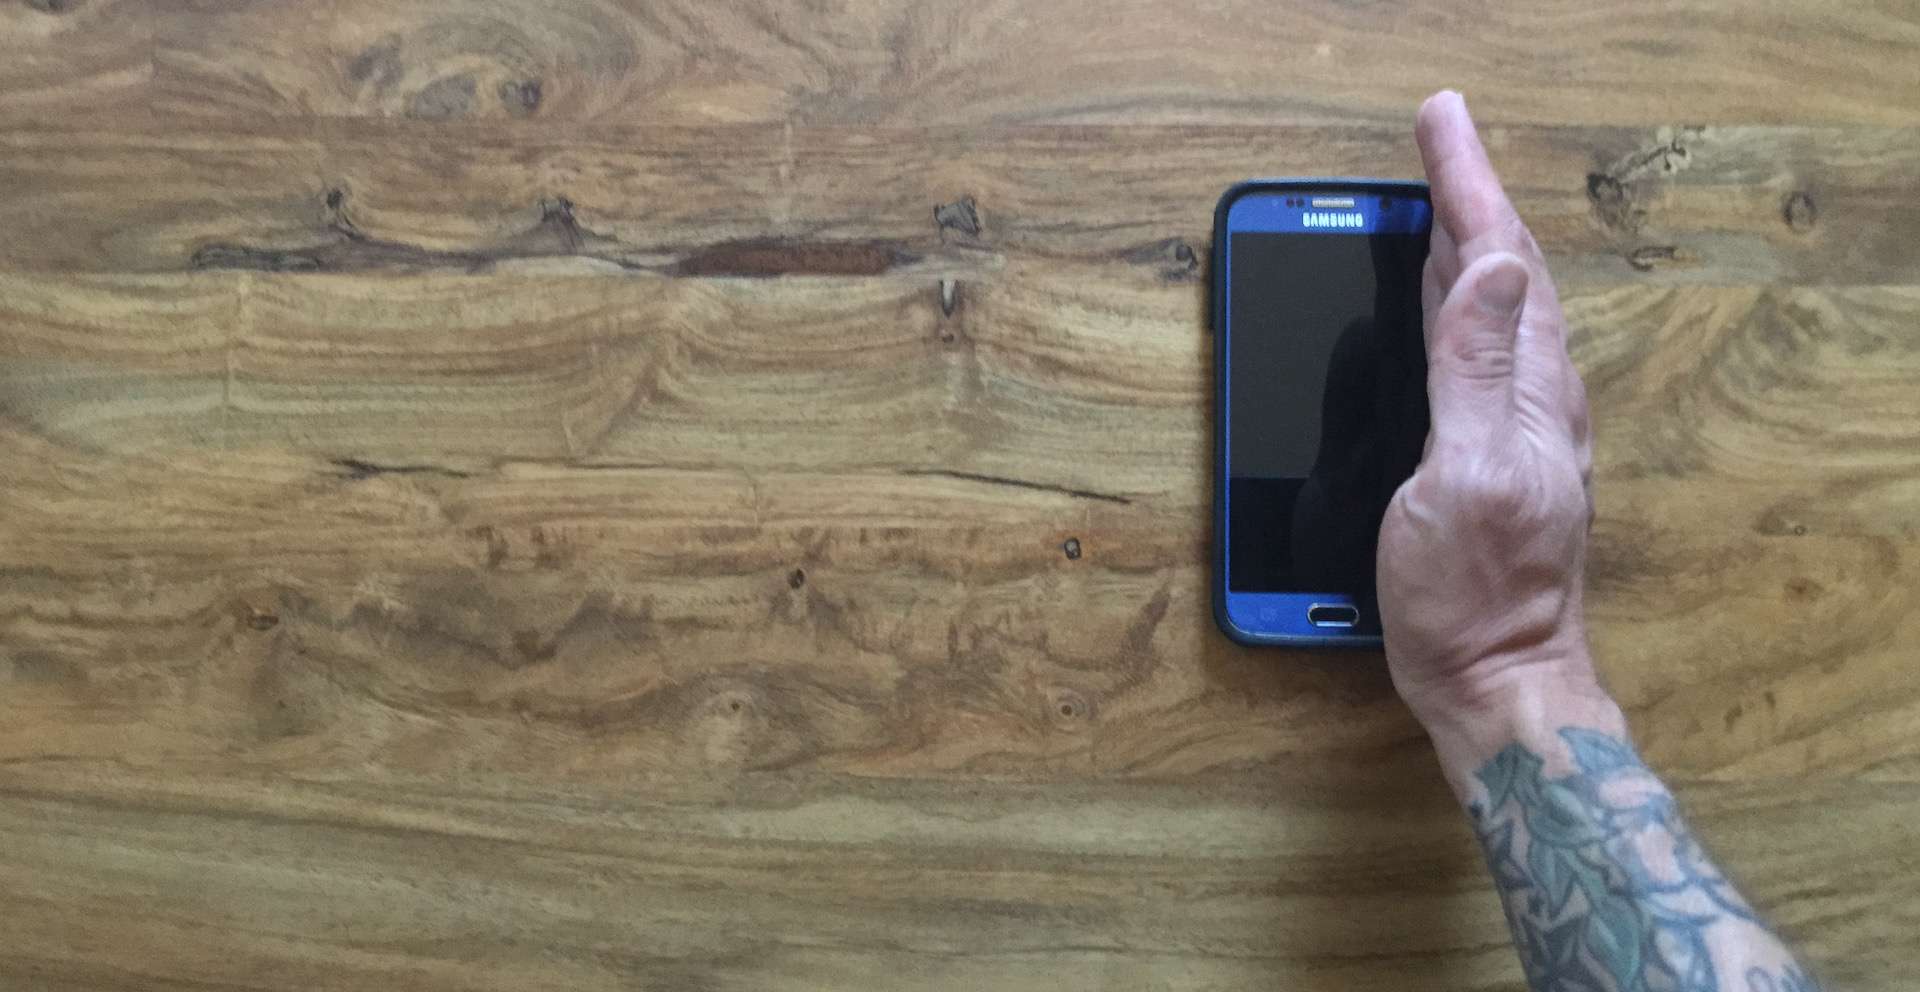 Mužská ruka je svisle na okraji Samsung S6.